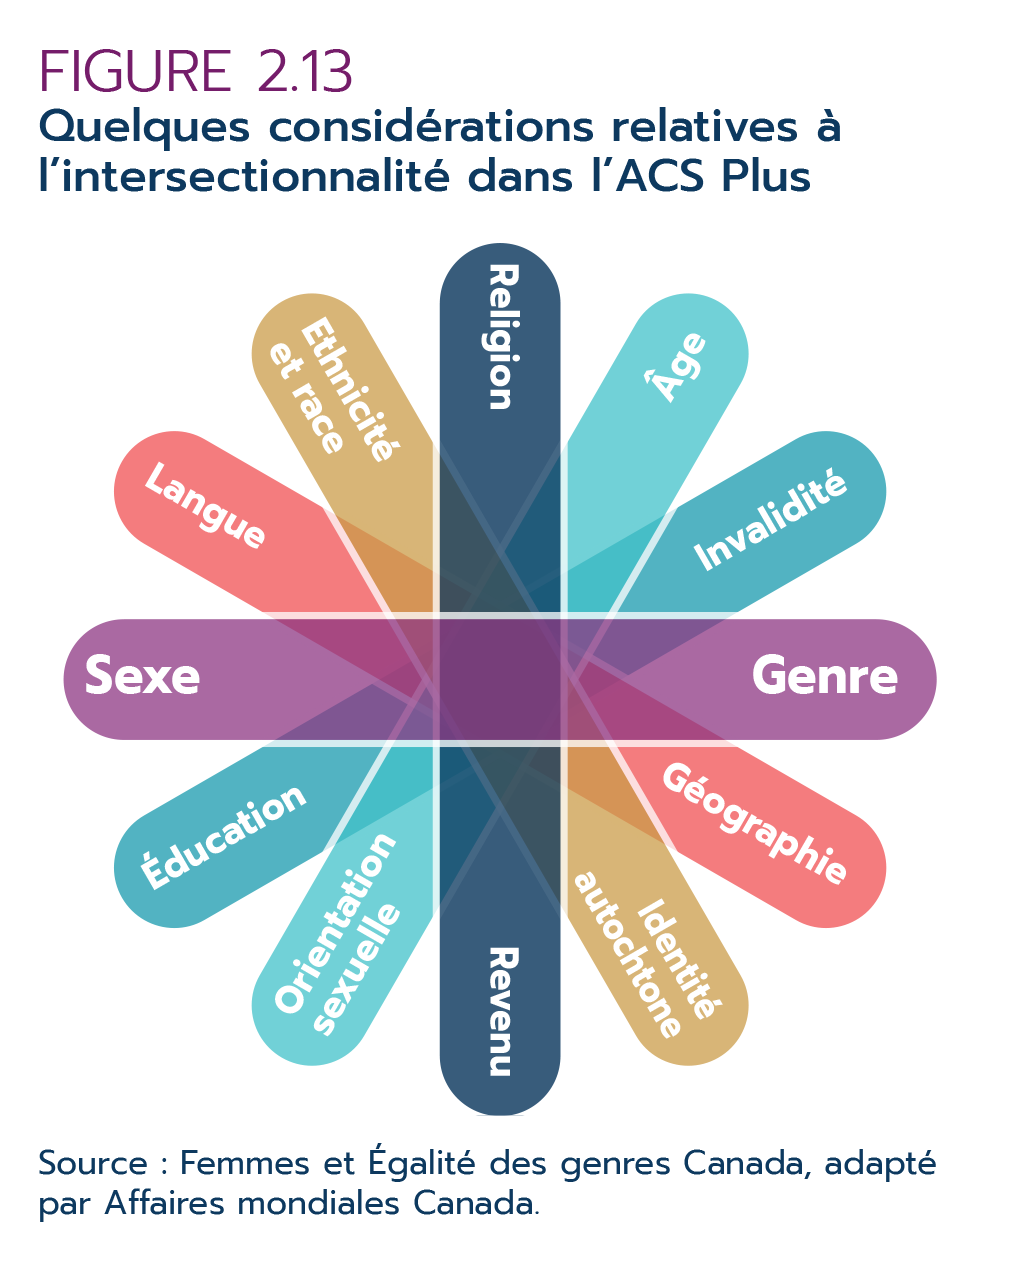 Figure 2.13 – Quelques considérations liées à l'intersectionnalité dans l'ACS Plus